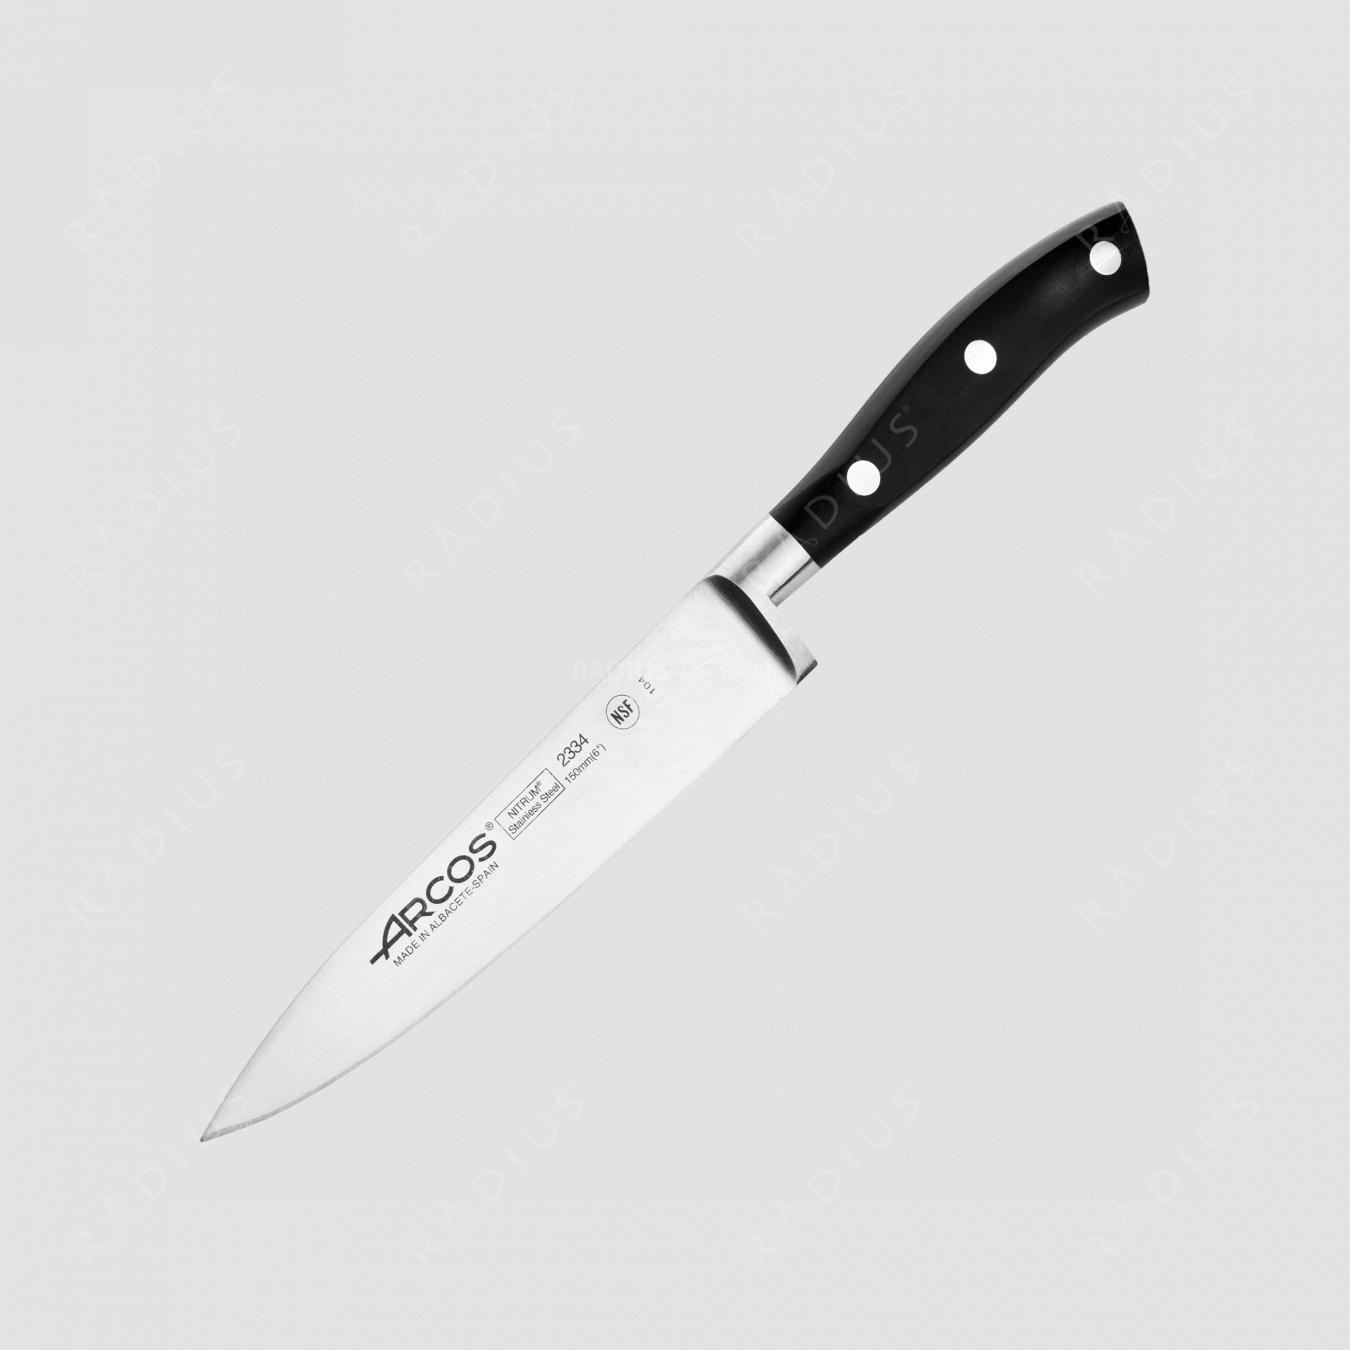 Профессиональный поварской кухонный нож 15 см, серия Riviera, ARCOS, Испания